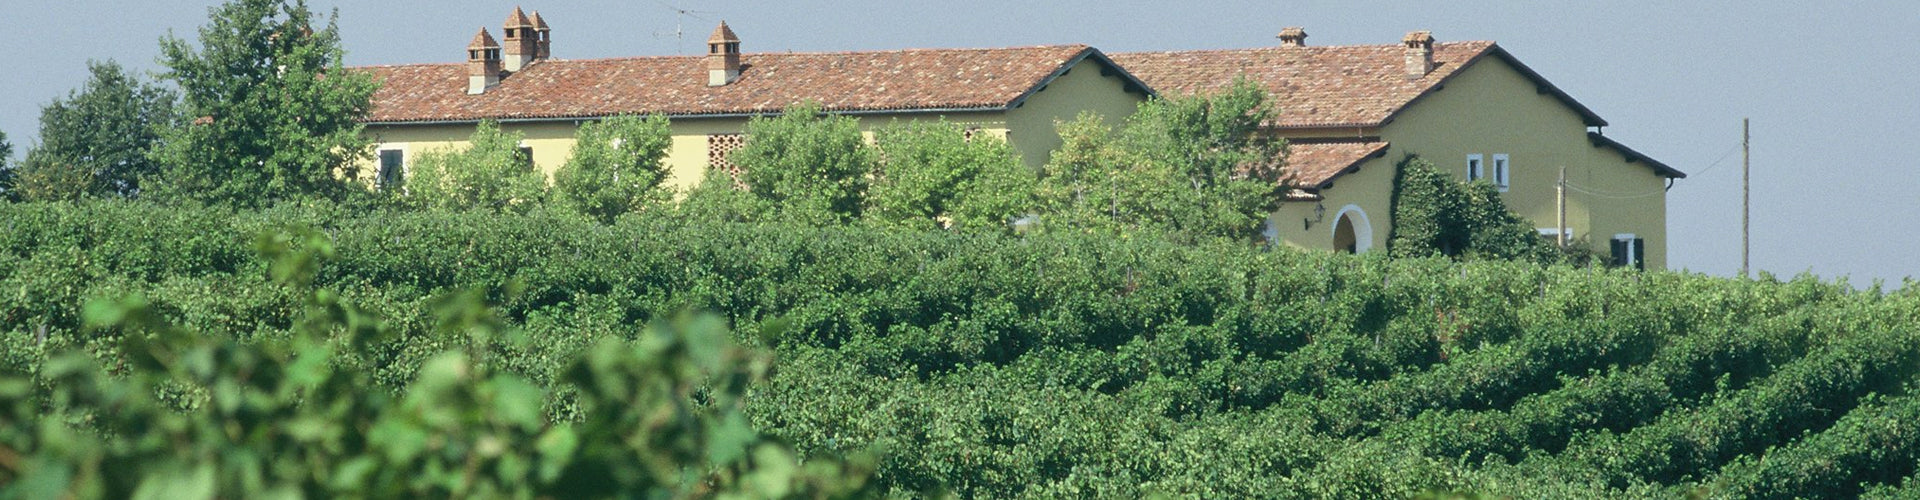 Broglia Estate in Gavi, Italy